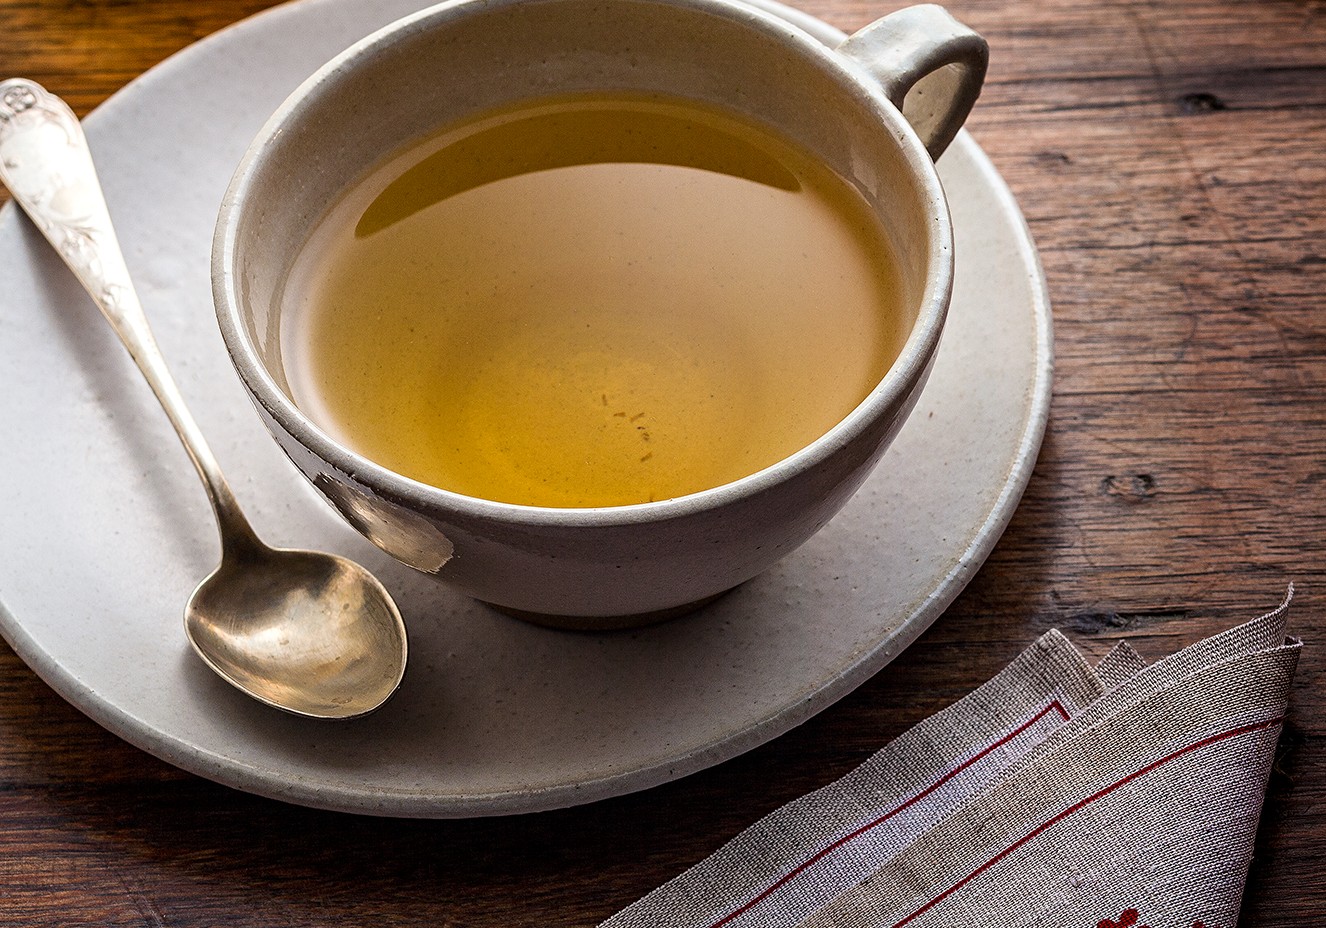  Chás no inverno: o consumo da bebida é sinônimo de sabor e benefícios à saúde